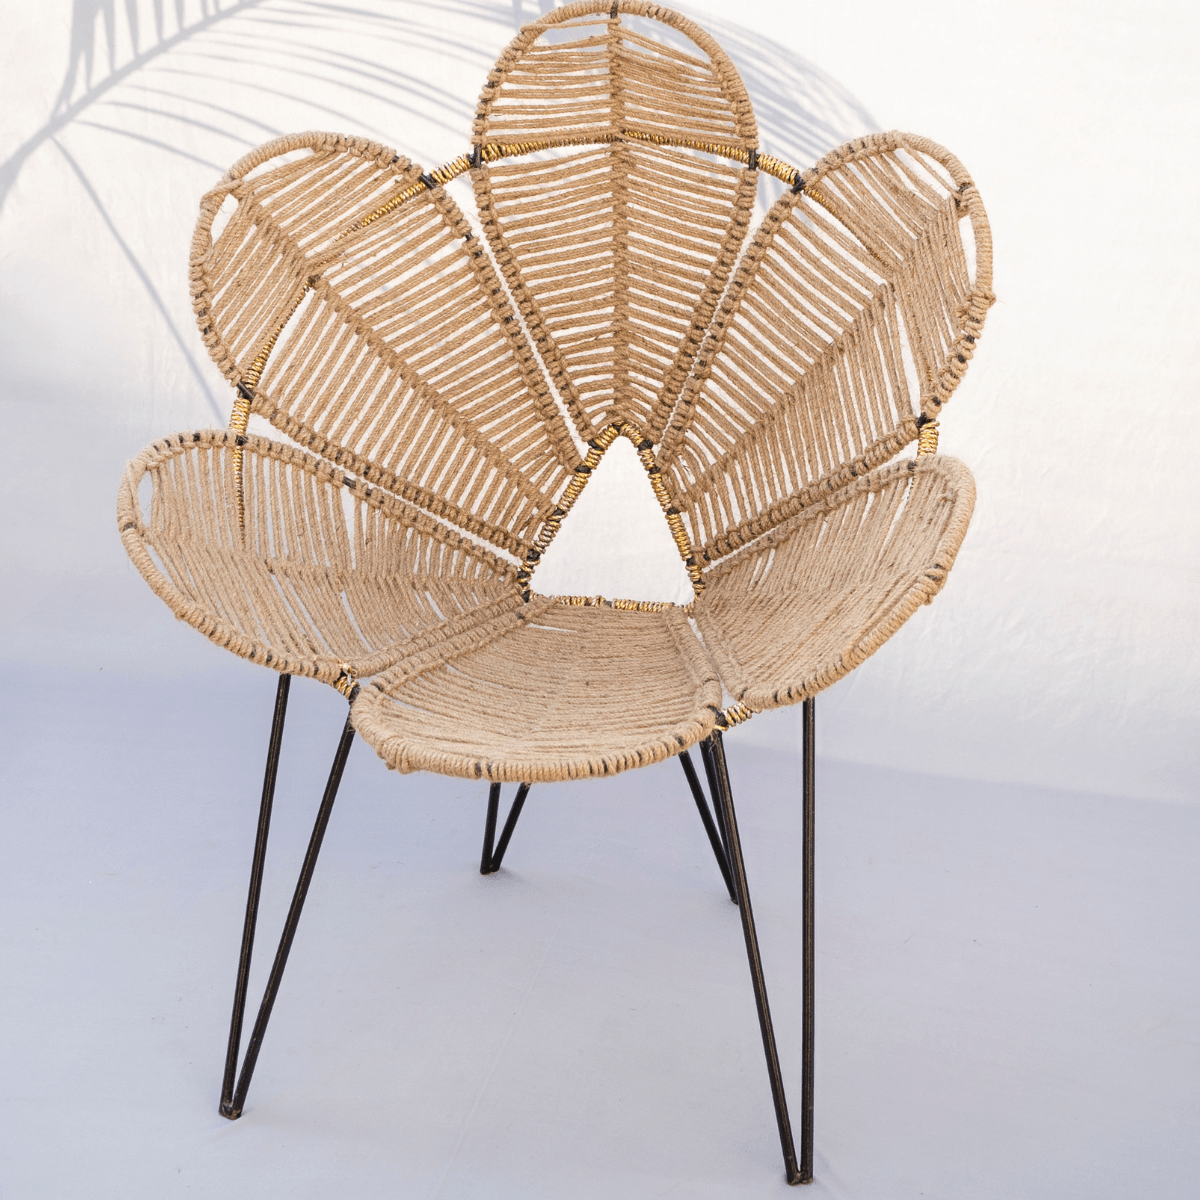 Natural Jute Flower Chair - Sirohi.org - Colour_Jute Beige, Purpose_Indoor Seating, Purpose_Outdoor Seating, Rope Material_Natural Jute Fibre